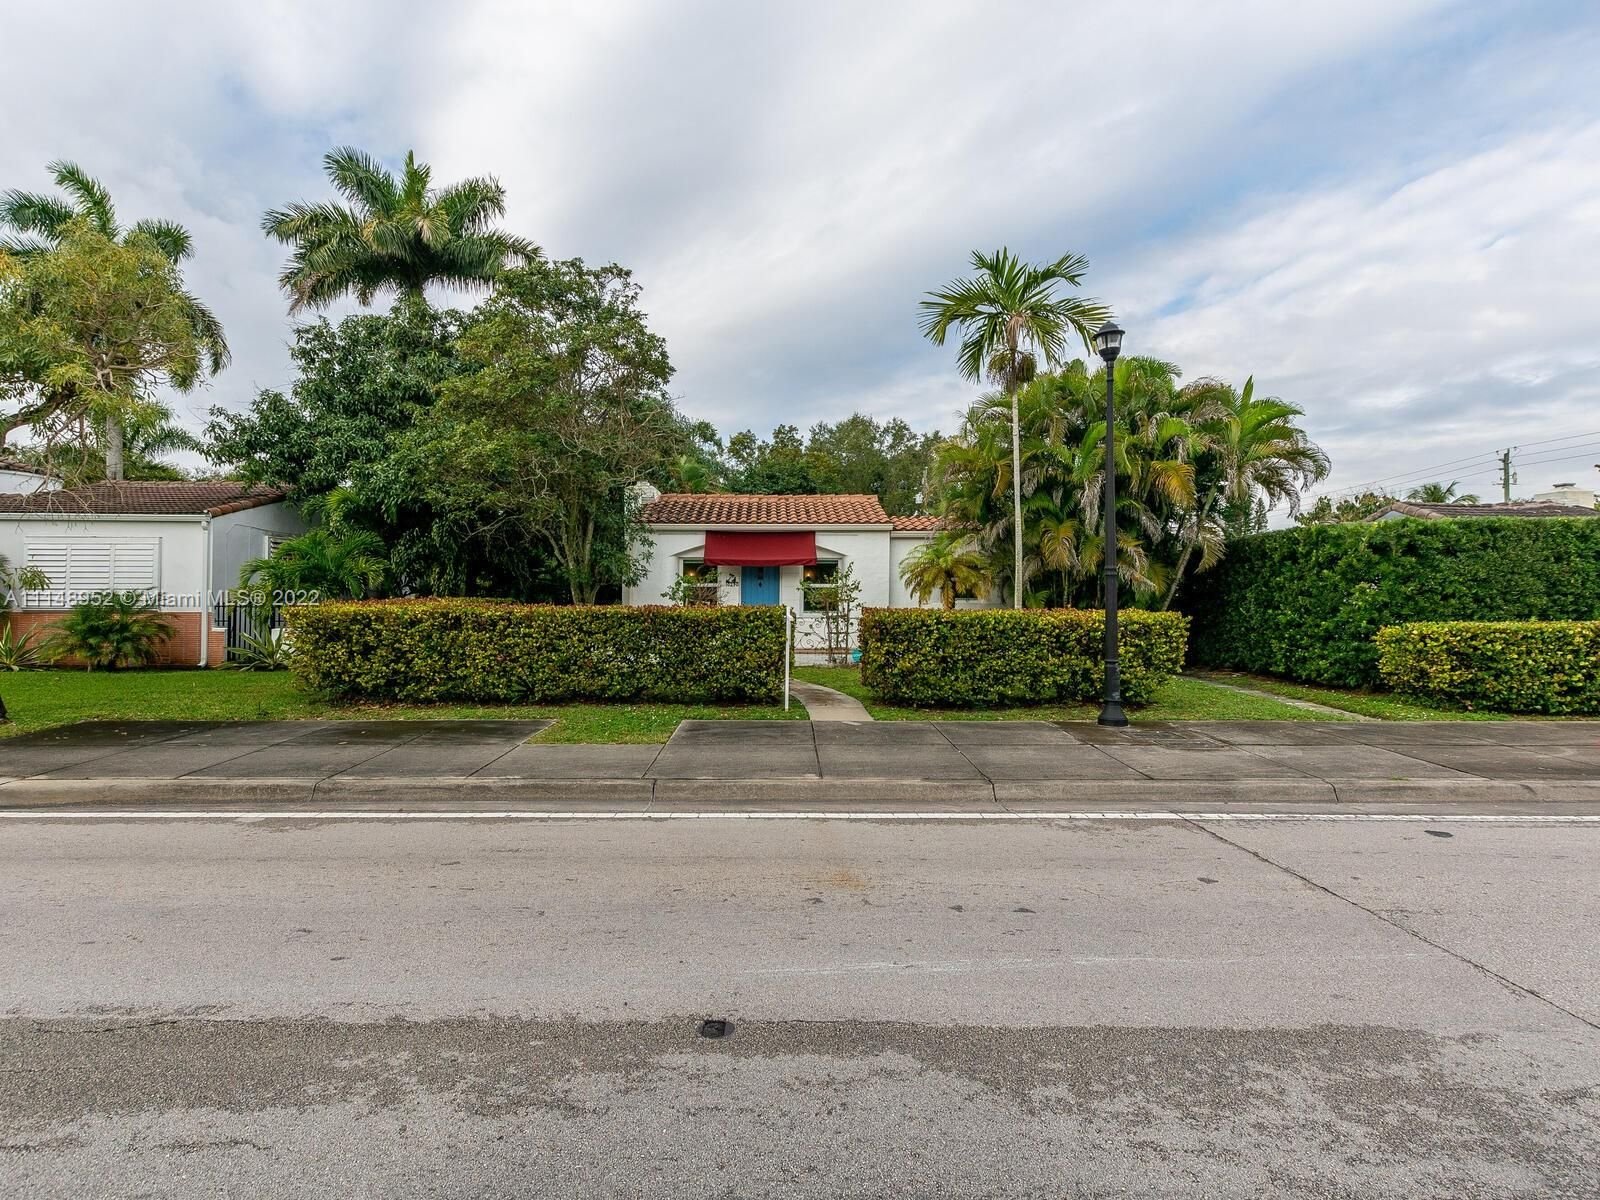 Real estate property located at 10290 Miami Ave, Miami-Dade County, Miami Shores, FL